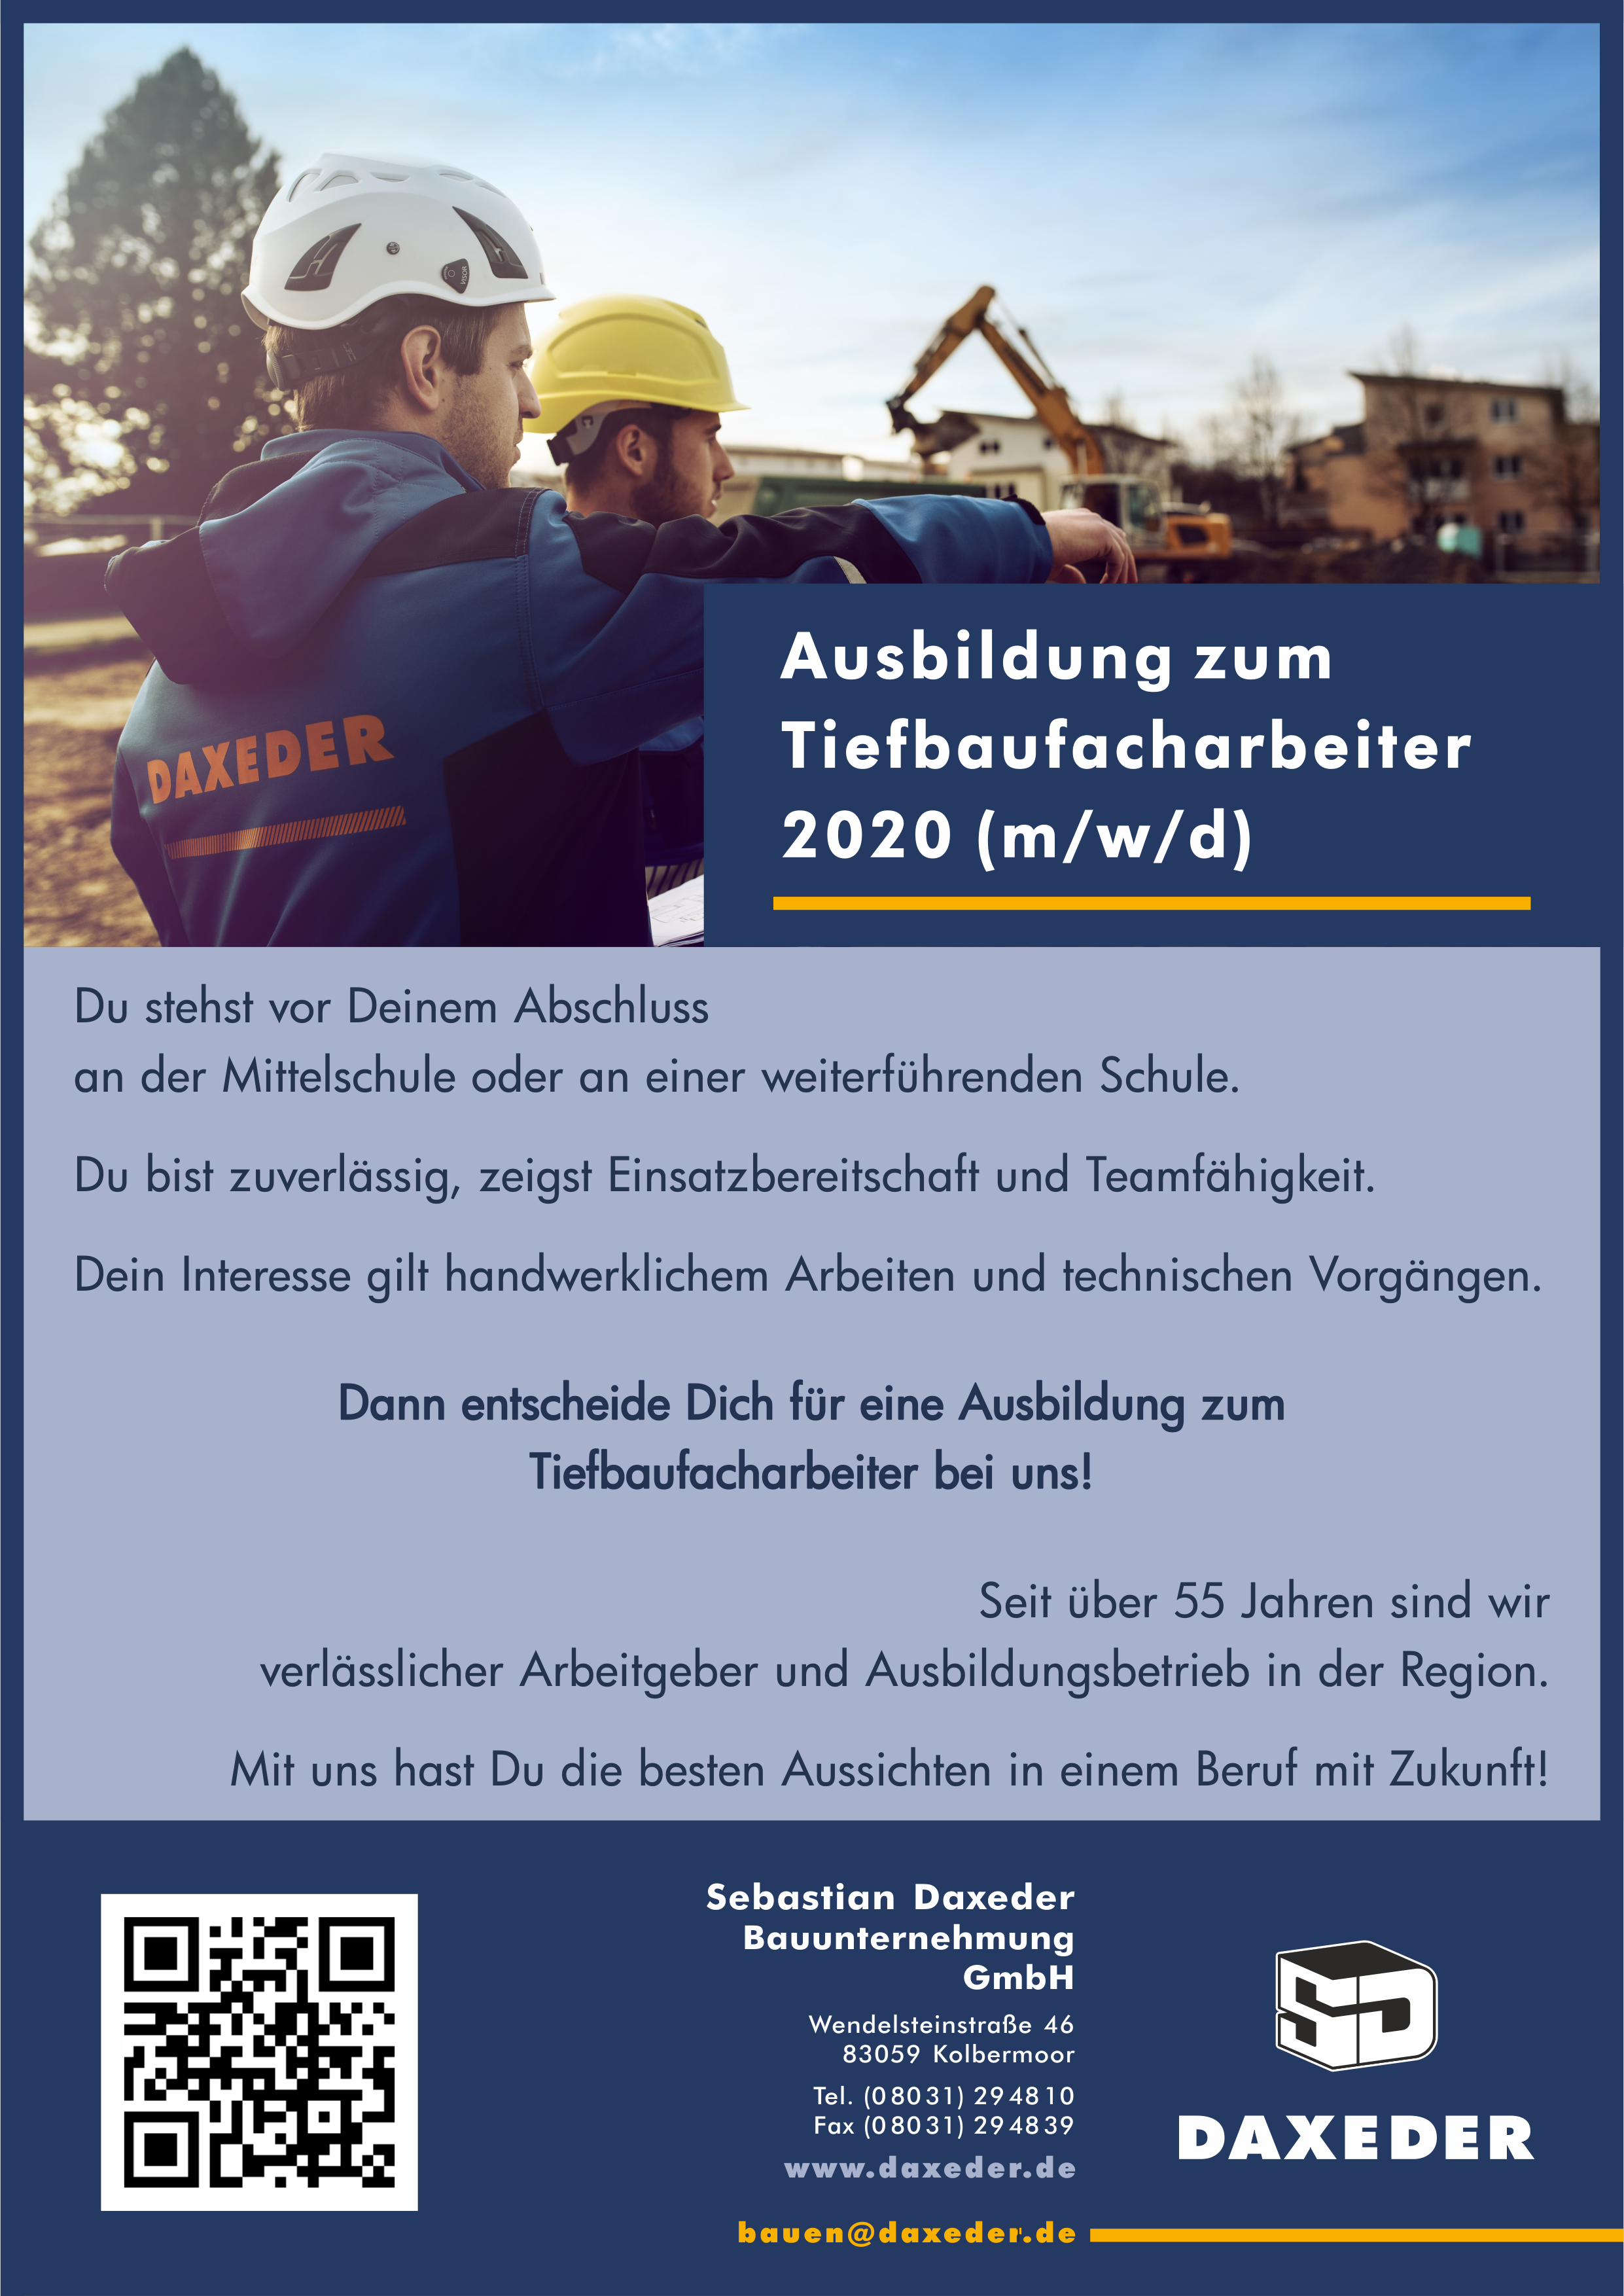 Sebastian Daxeder Bauunternehmung GmbH, Ausbildung Tiefbaufacharbeiter 2020